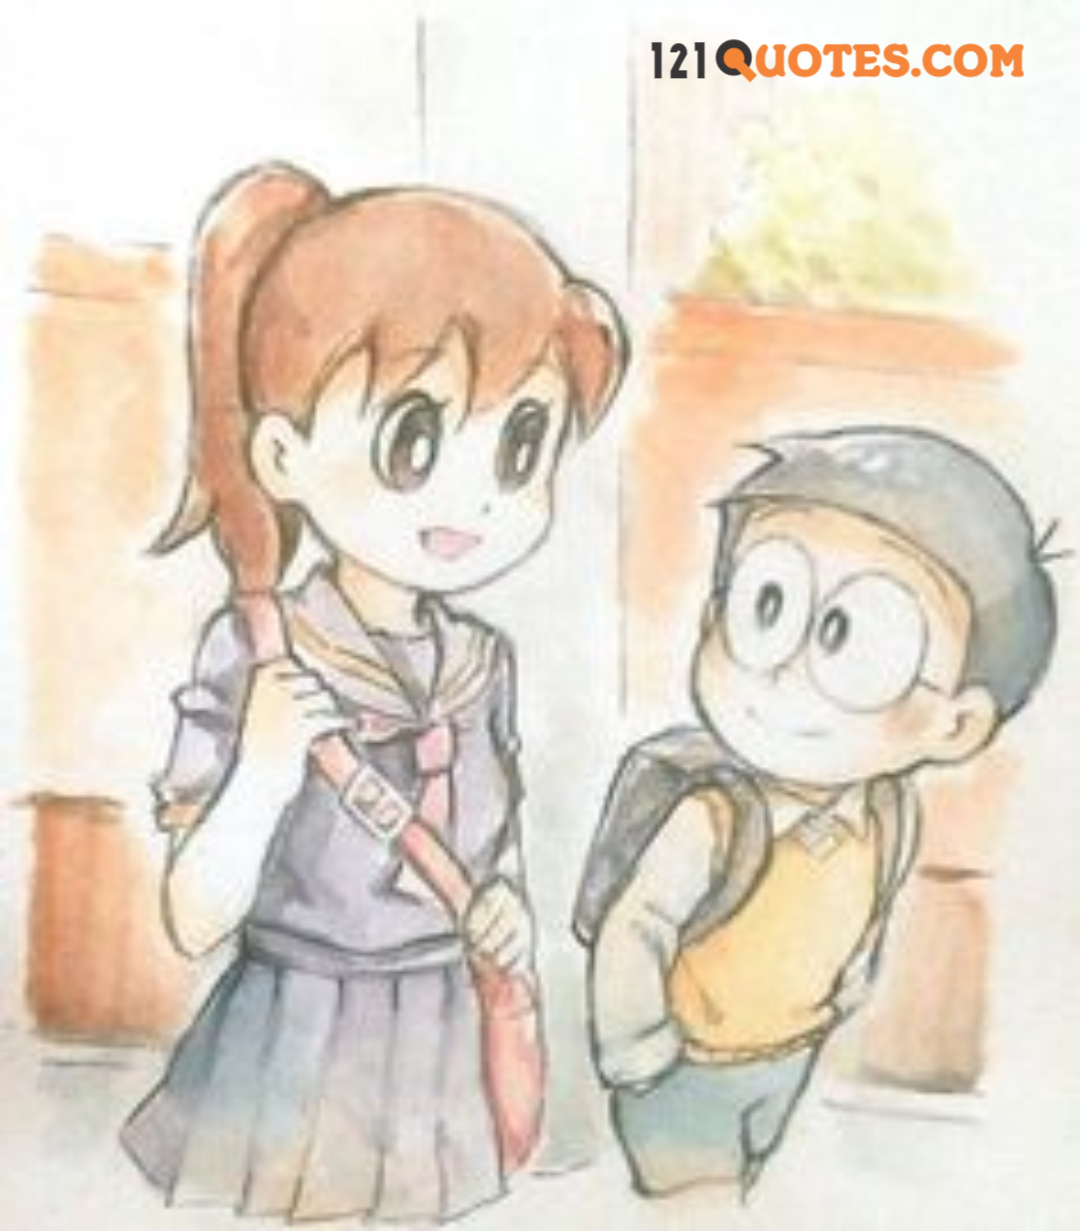 doraemon and nobita friendship images